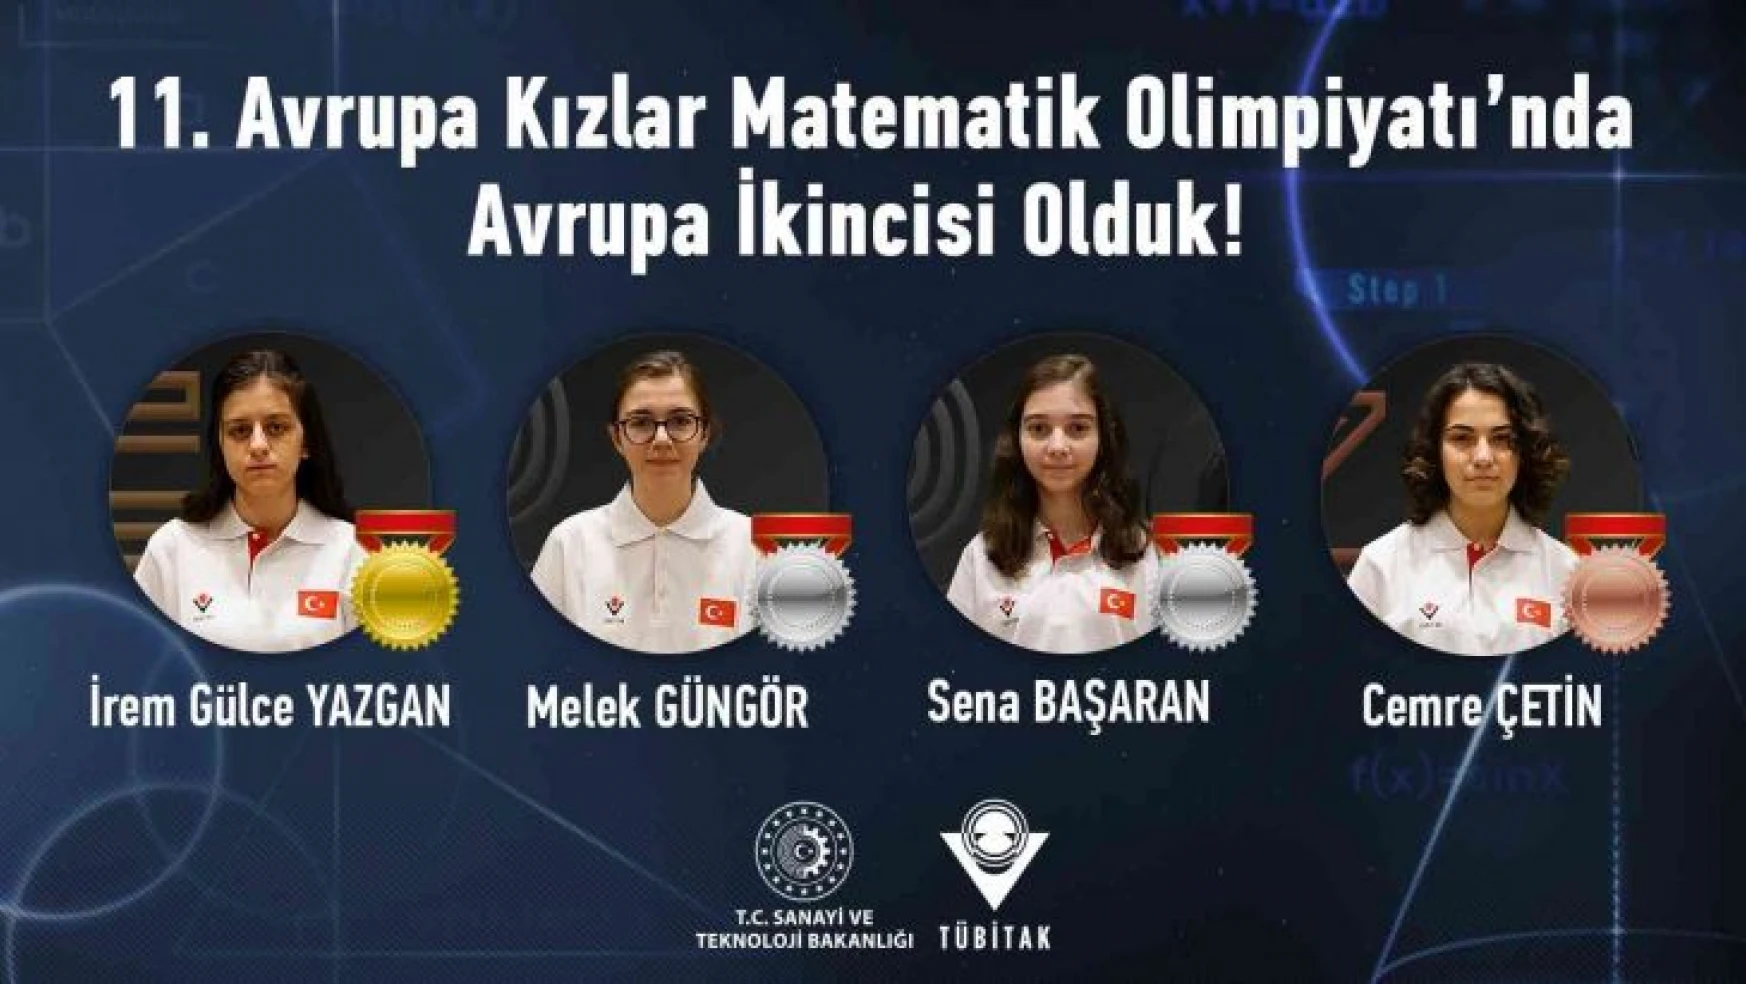 Avrupa Kızlar Matematik Olimpiyatı'nda tarihi başarı